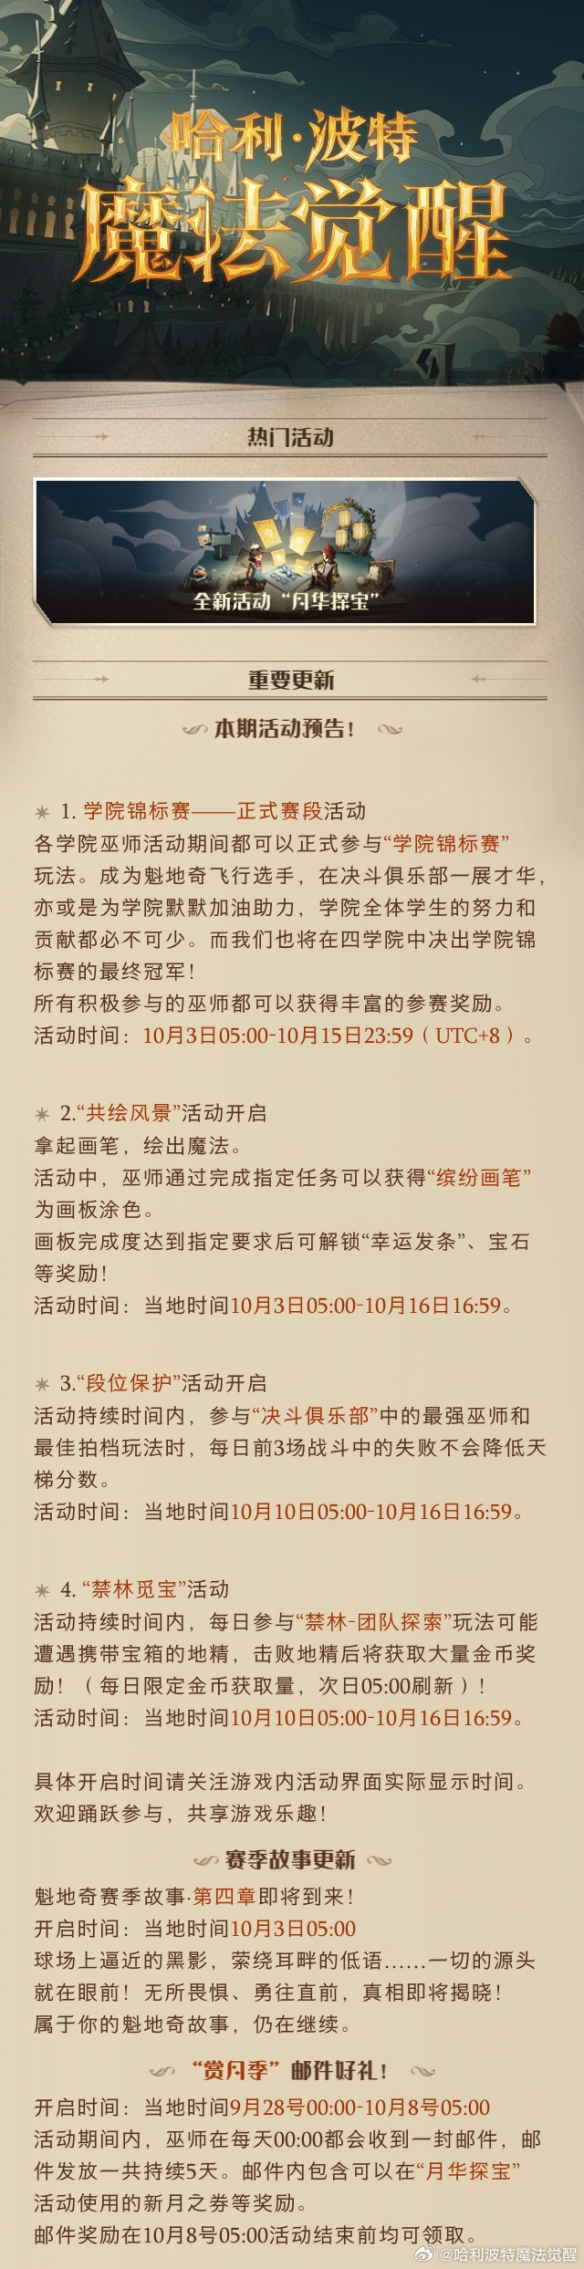 《哈利波特魔法覺醒》9月26日更新內容 中秋國慶活動預加載